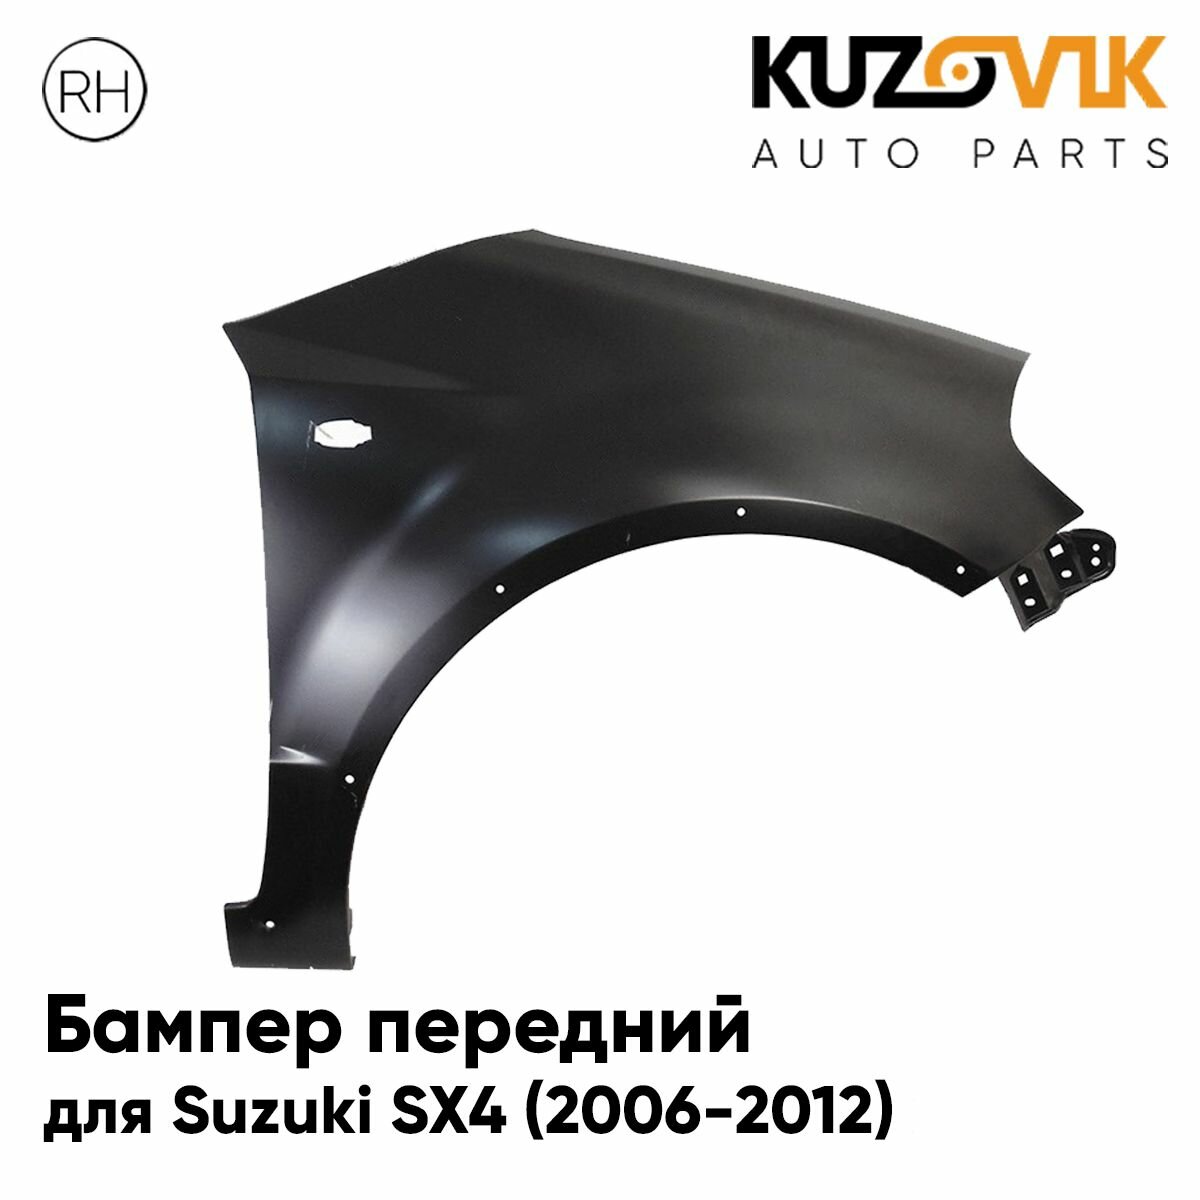 Крыло переднее правое для Сузуки Suzuki SX4 (2006-2012) с отверстиями под расширитель